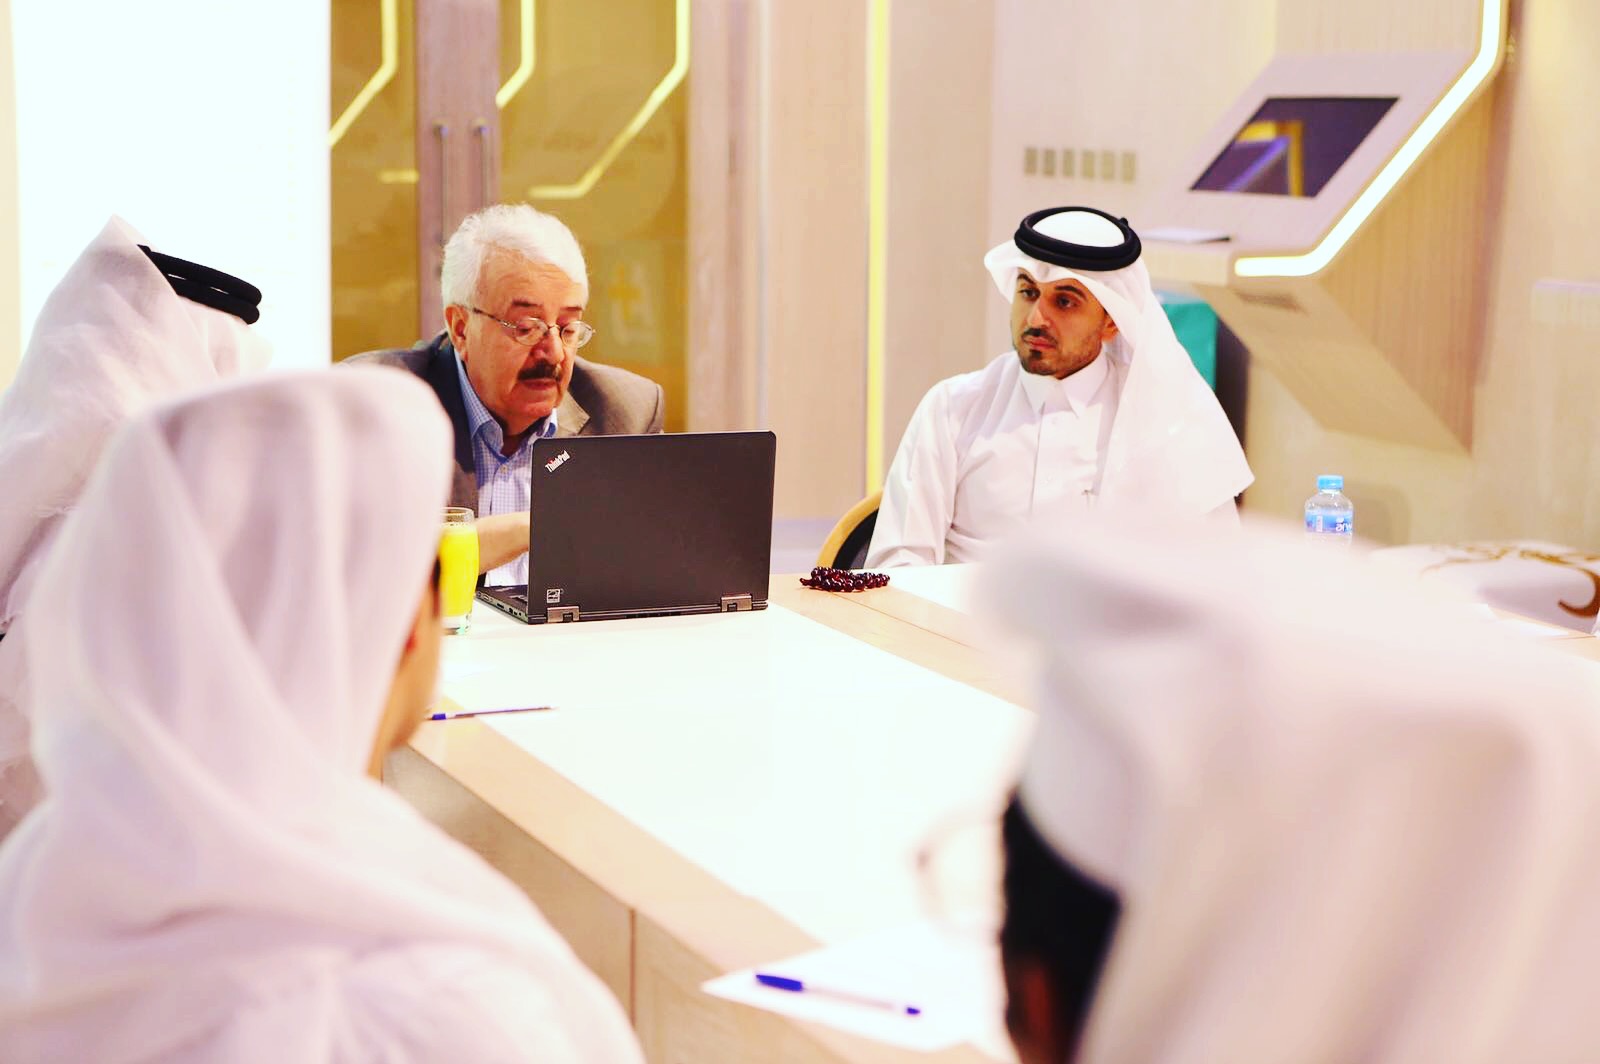 جلسة حوارية عن فن التواصل مع الآخرين بإدارة المدرب احمد المالكي 